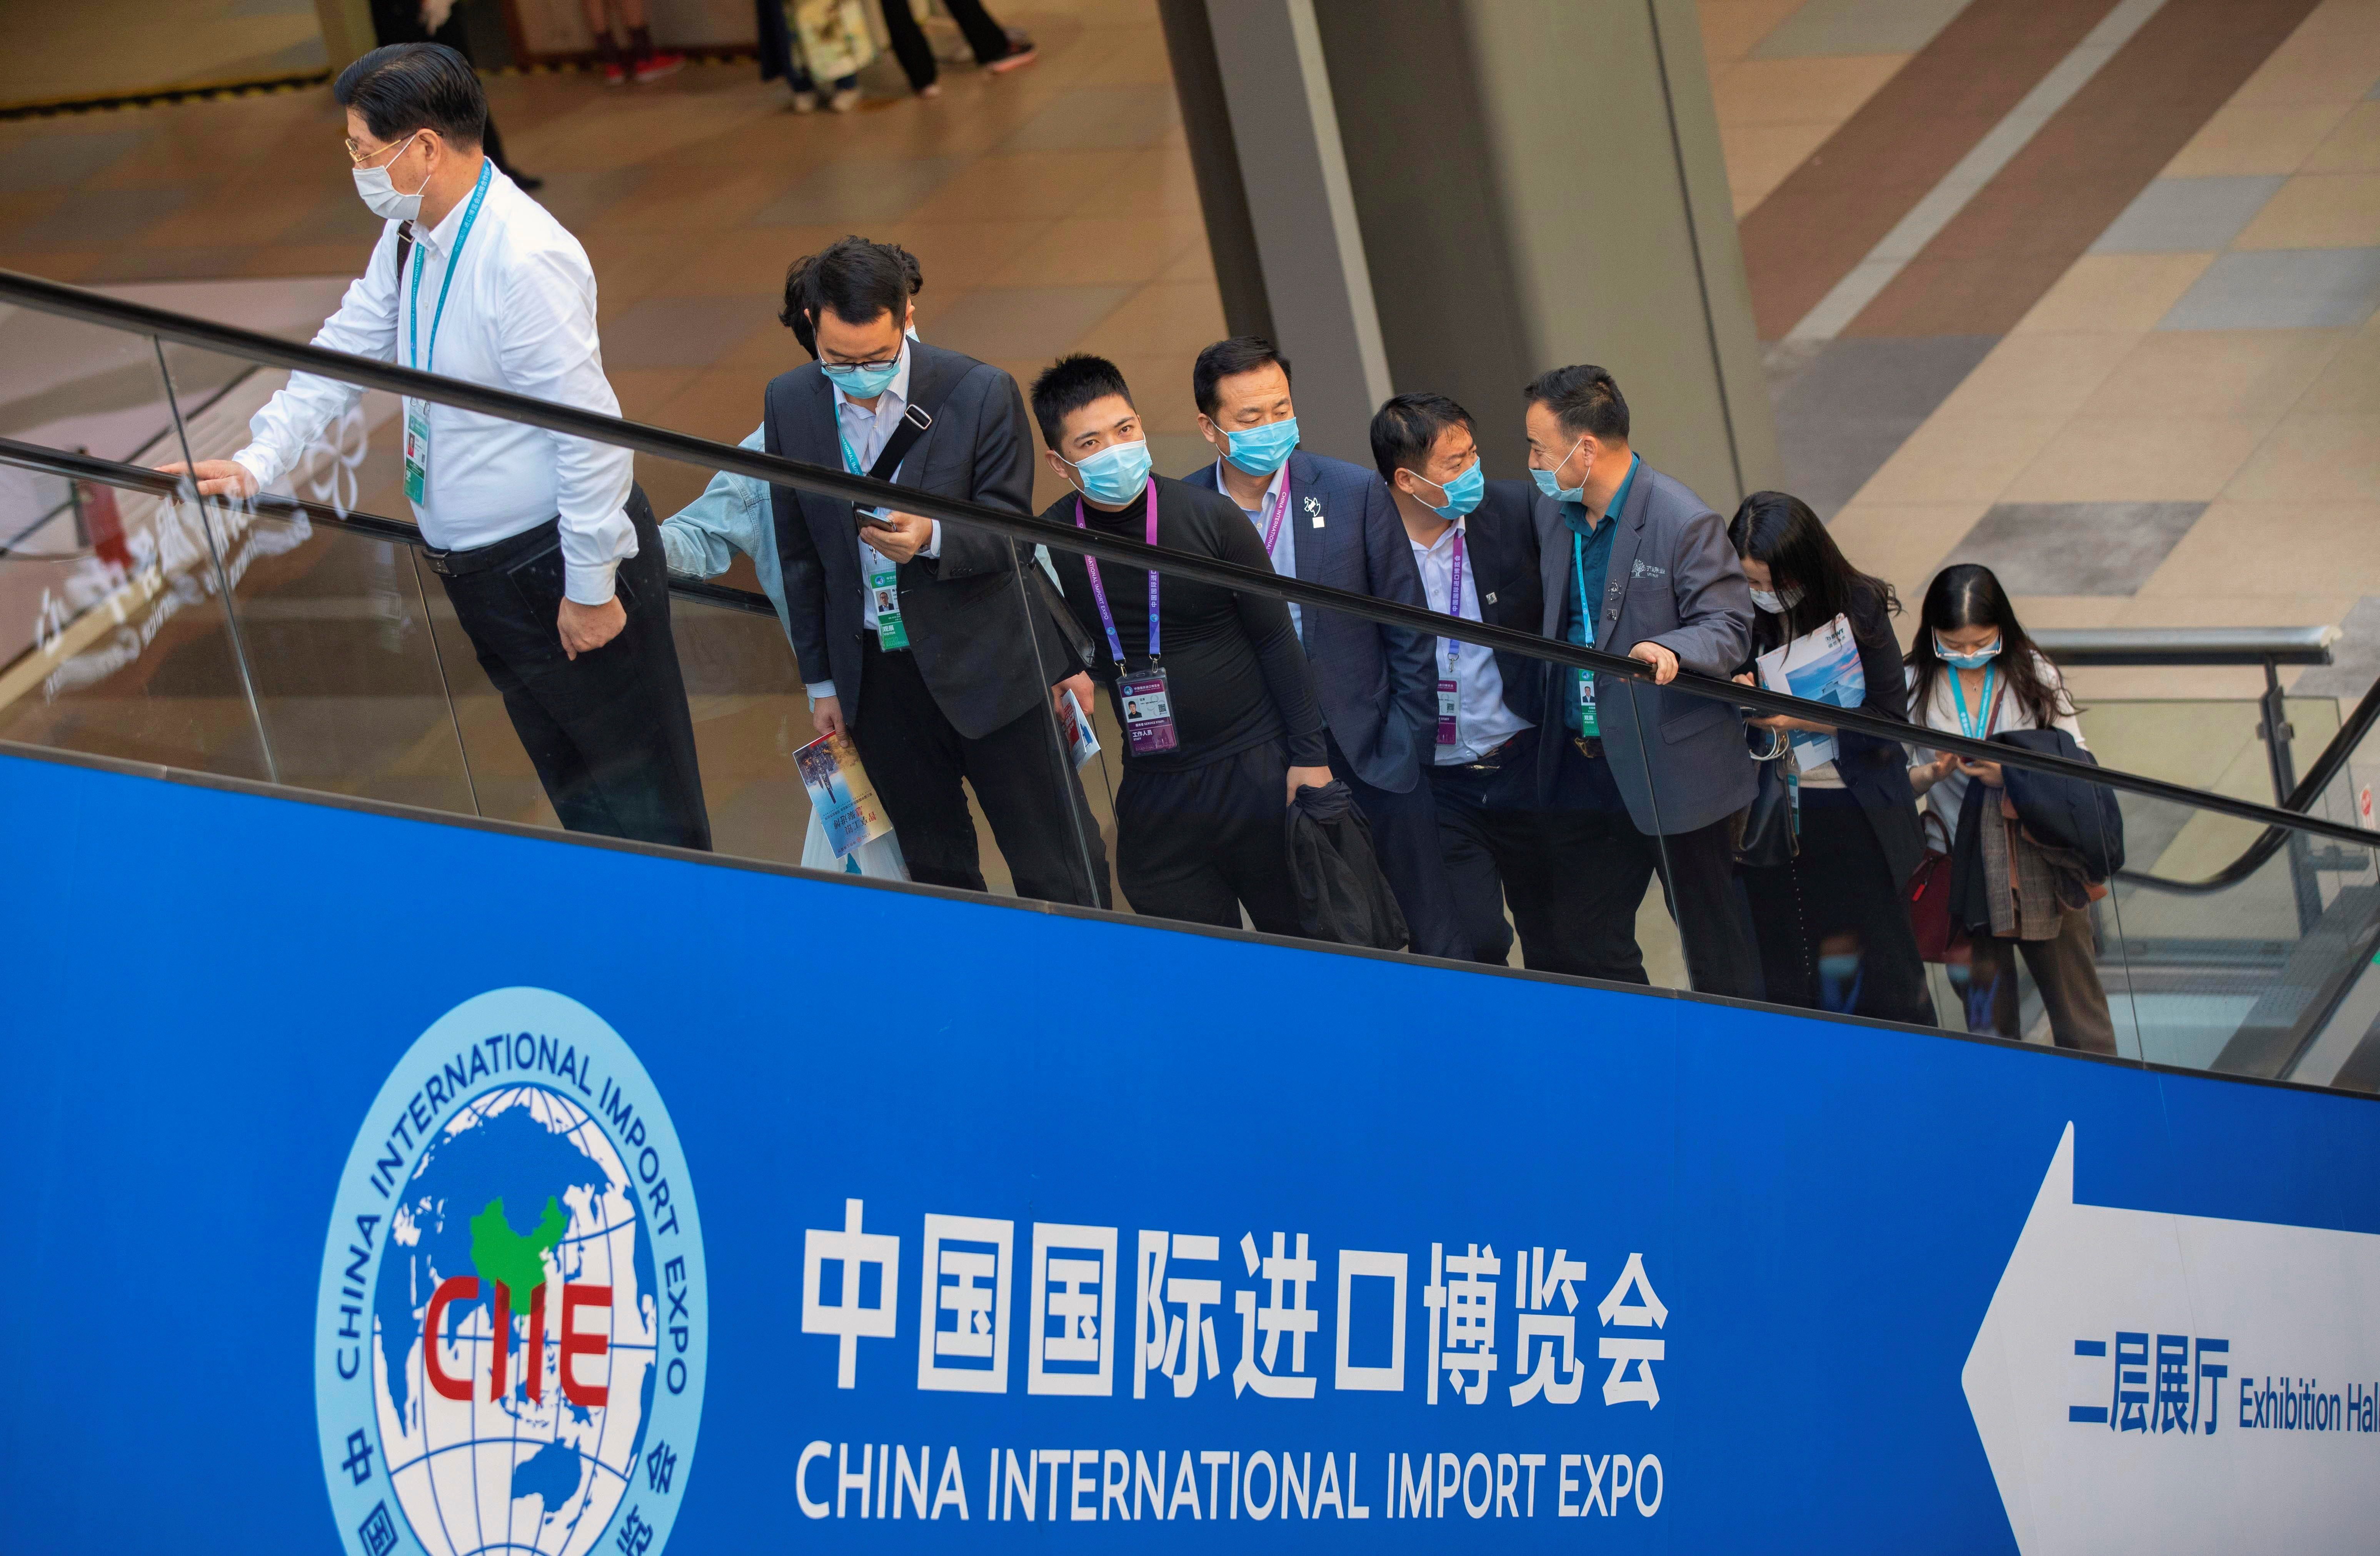 Numerosos visitantes montan en una escalera mecánica en la 3ª Exposición Internacional de Importación de China en Shanghai, China, EFE/EPA/ALEX PLAVEVSKI 